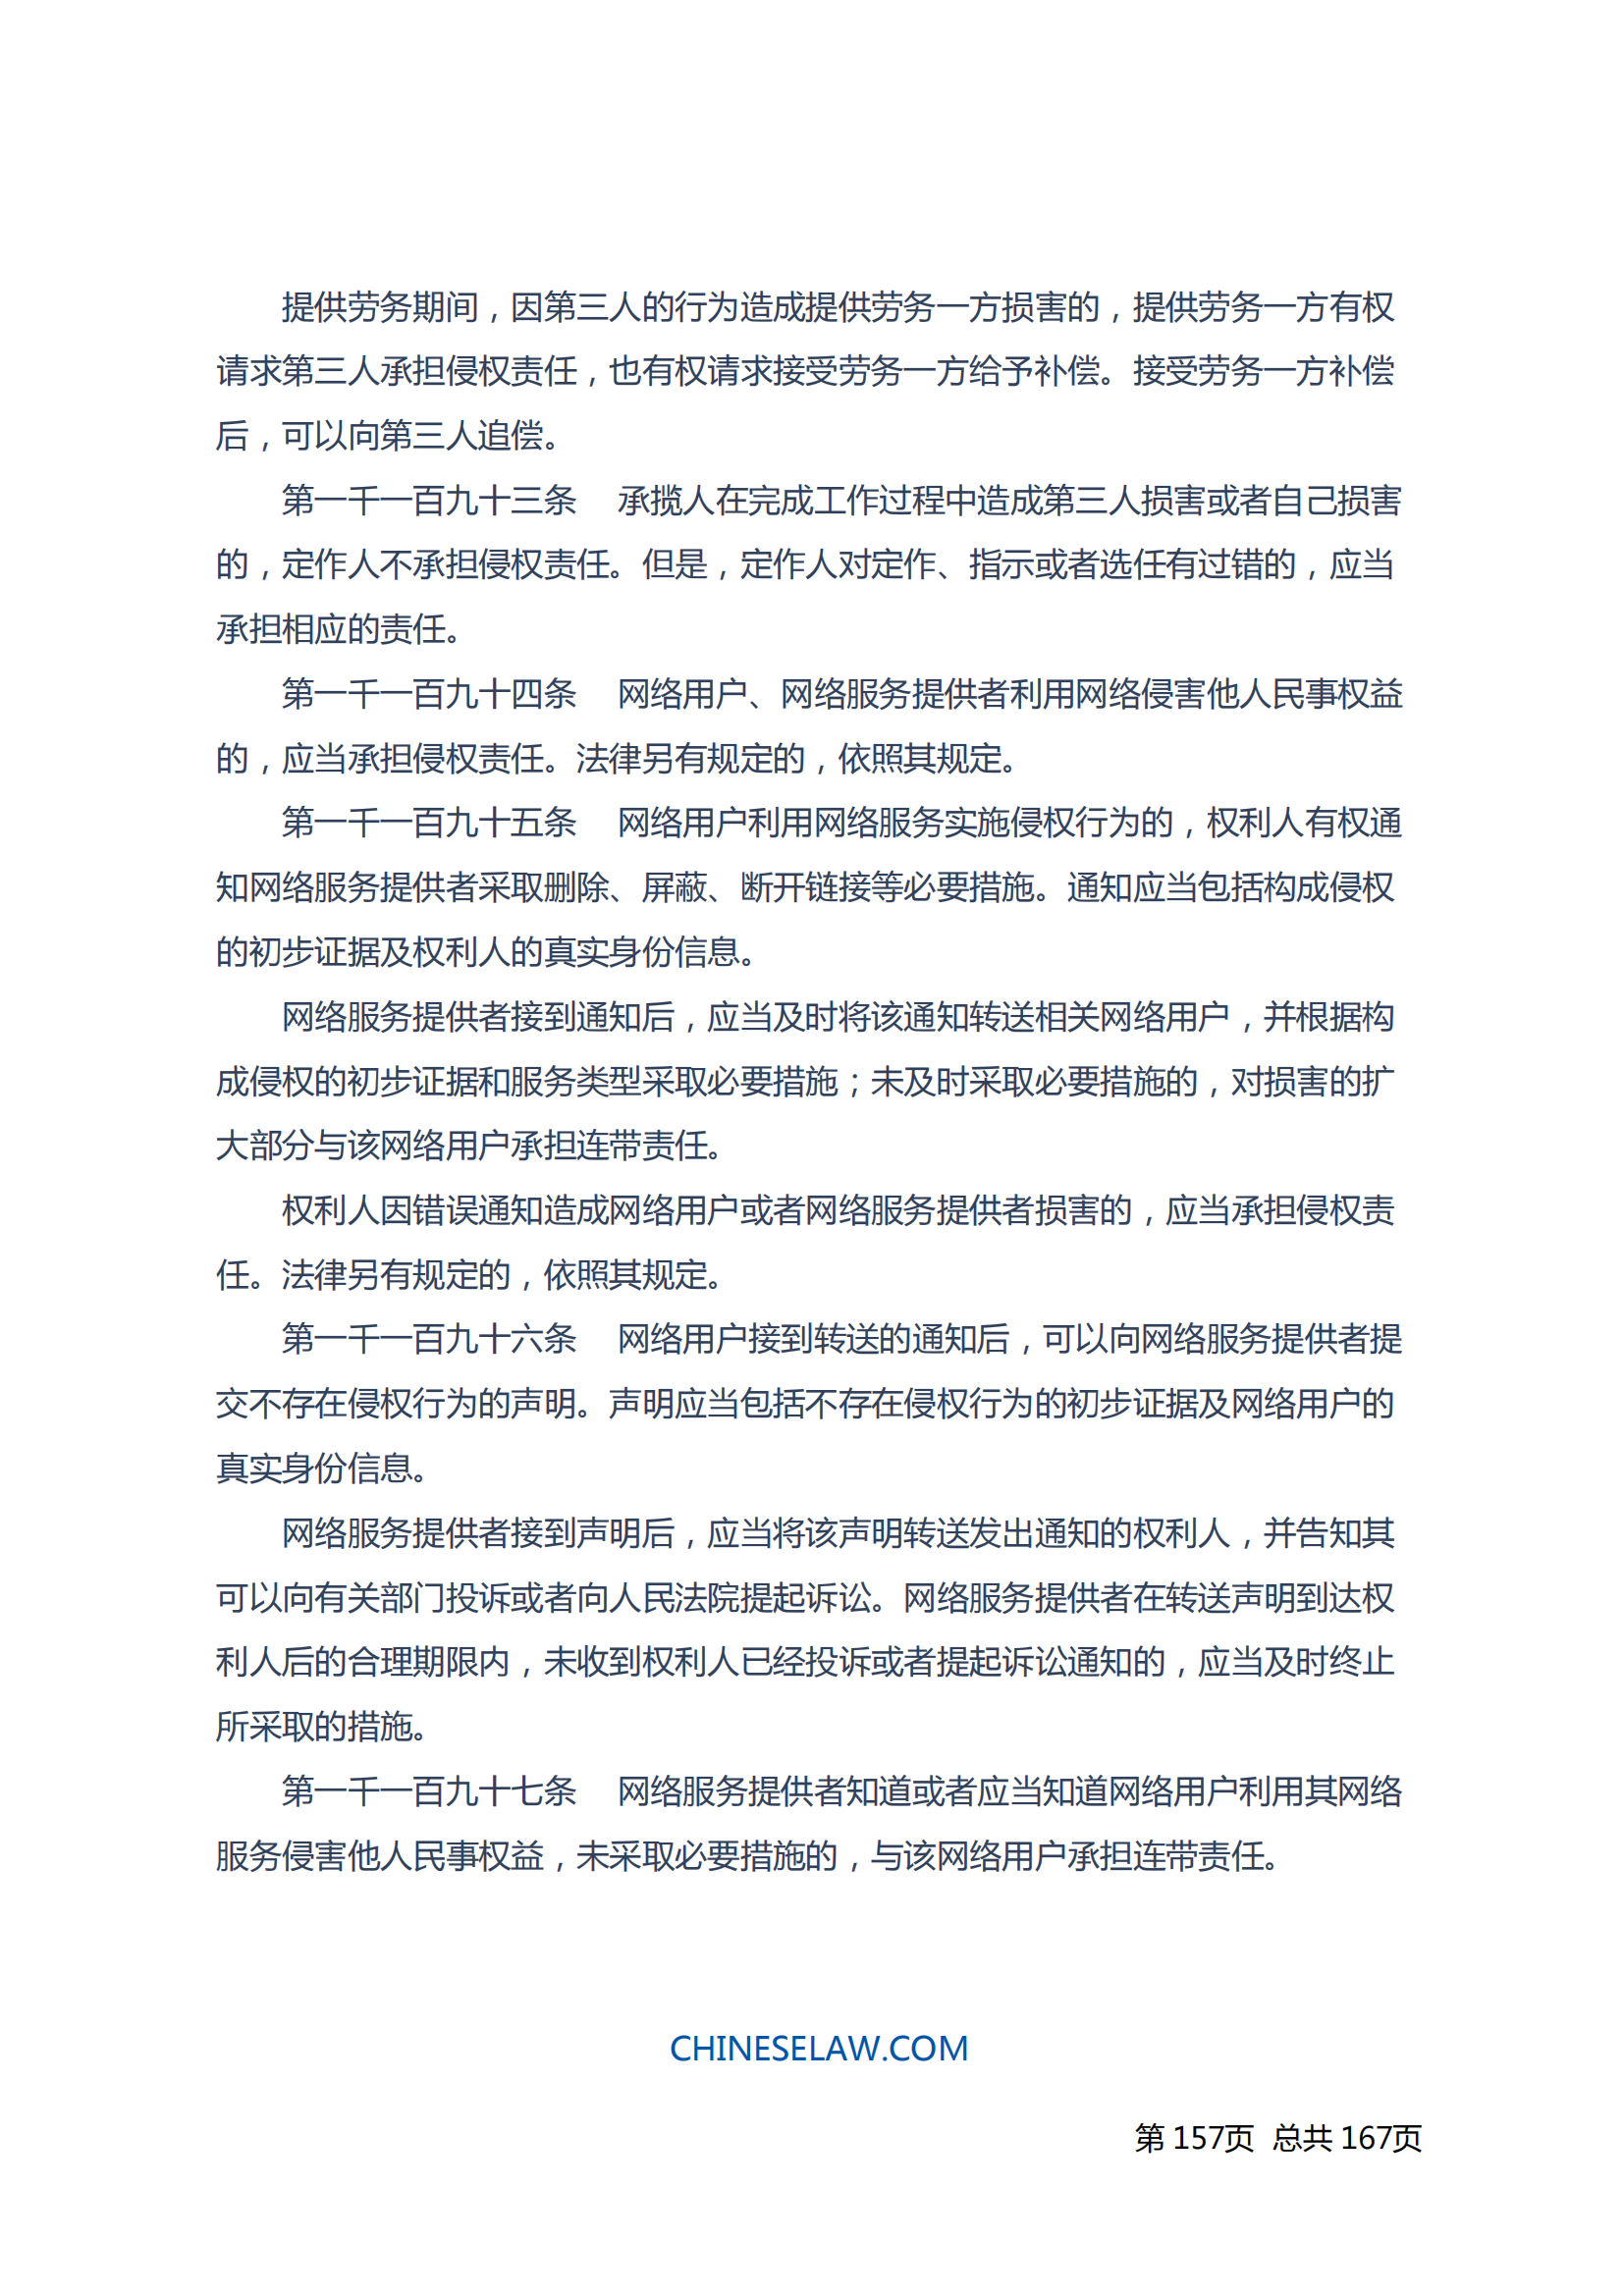 中华人民共和国民法典_156